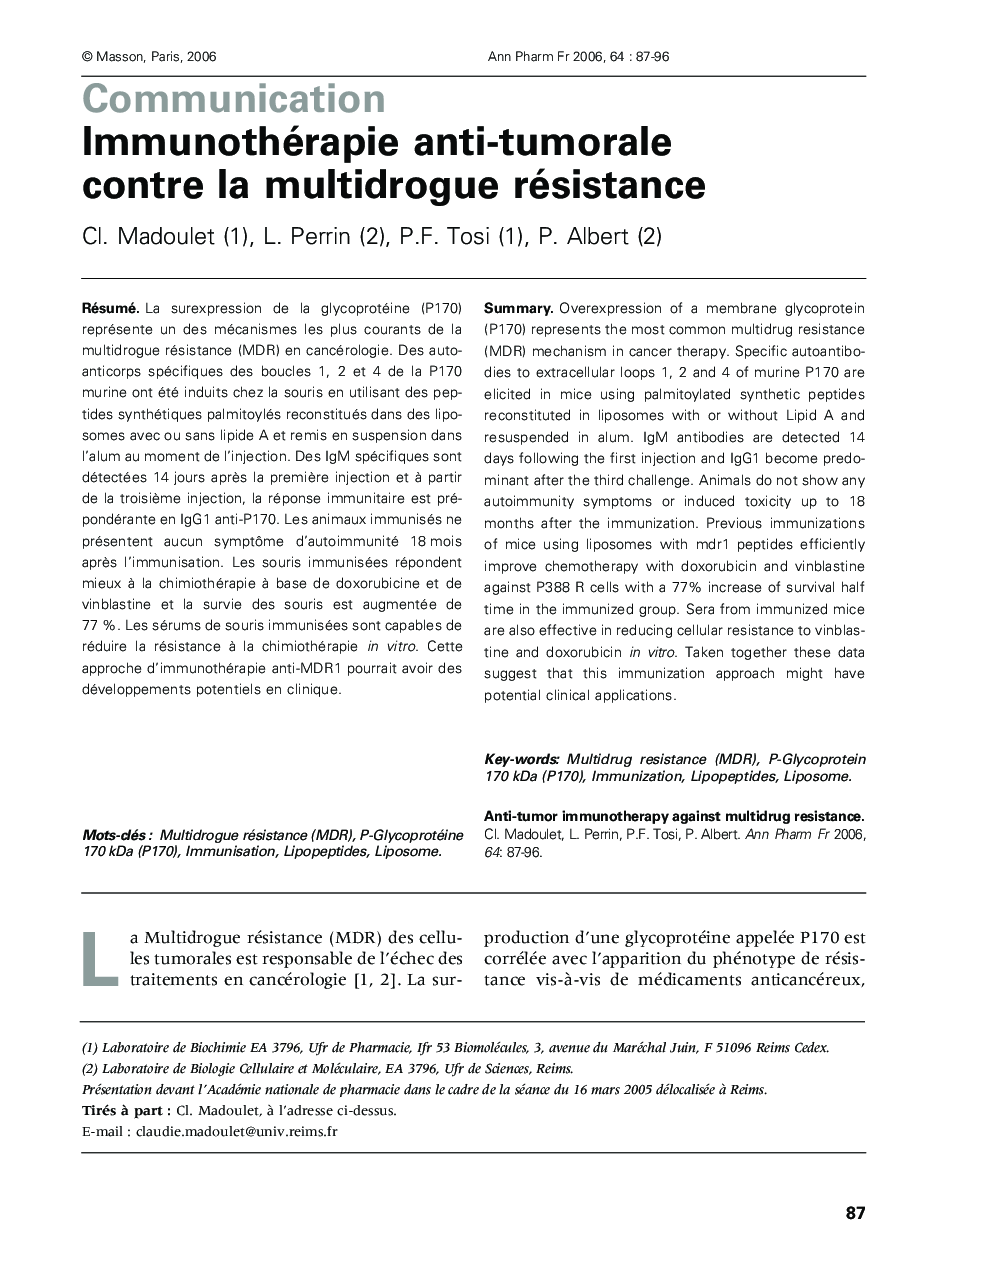 Immunothérapie anti-tumorale contre la multidrogue résistance